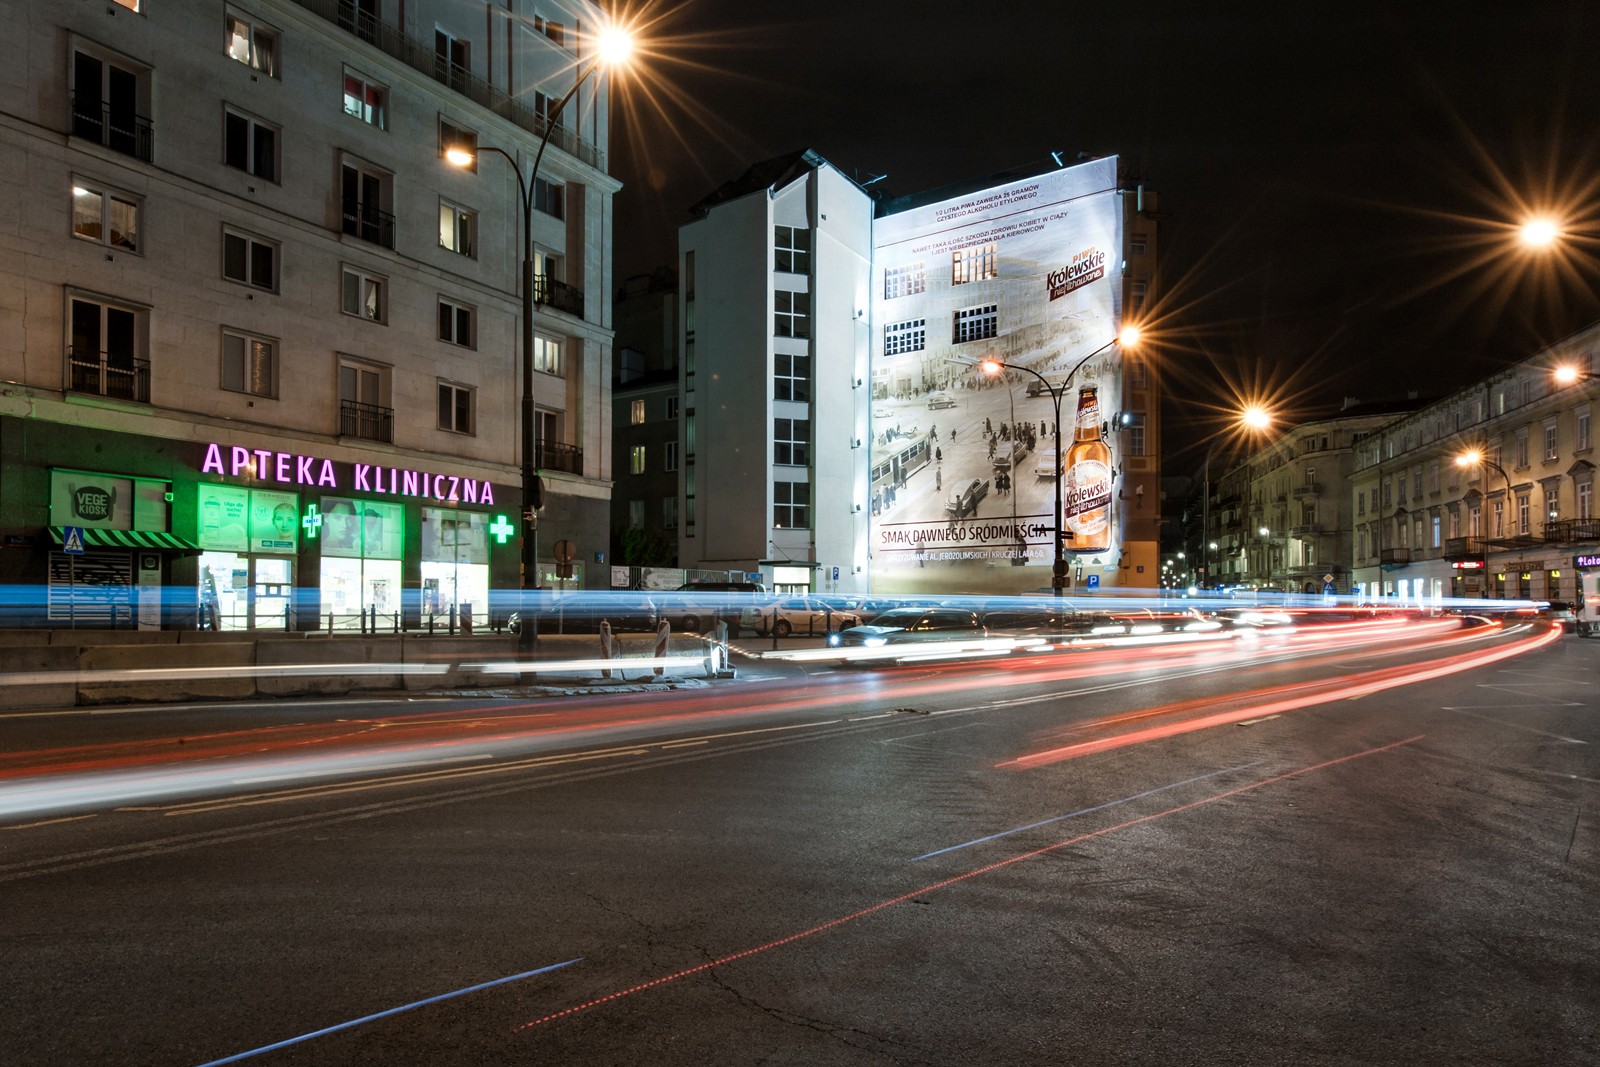 Nocny widok na centrum Warszawy z namalowanym muralem dla Królewskie Niefiltrowane na skrzyżowaniu ulicy Brackiej z Kruczą | Ręcznie malowana kampania reklamowa dla marki Królewskie | Portfolio